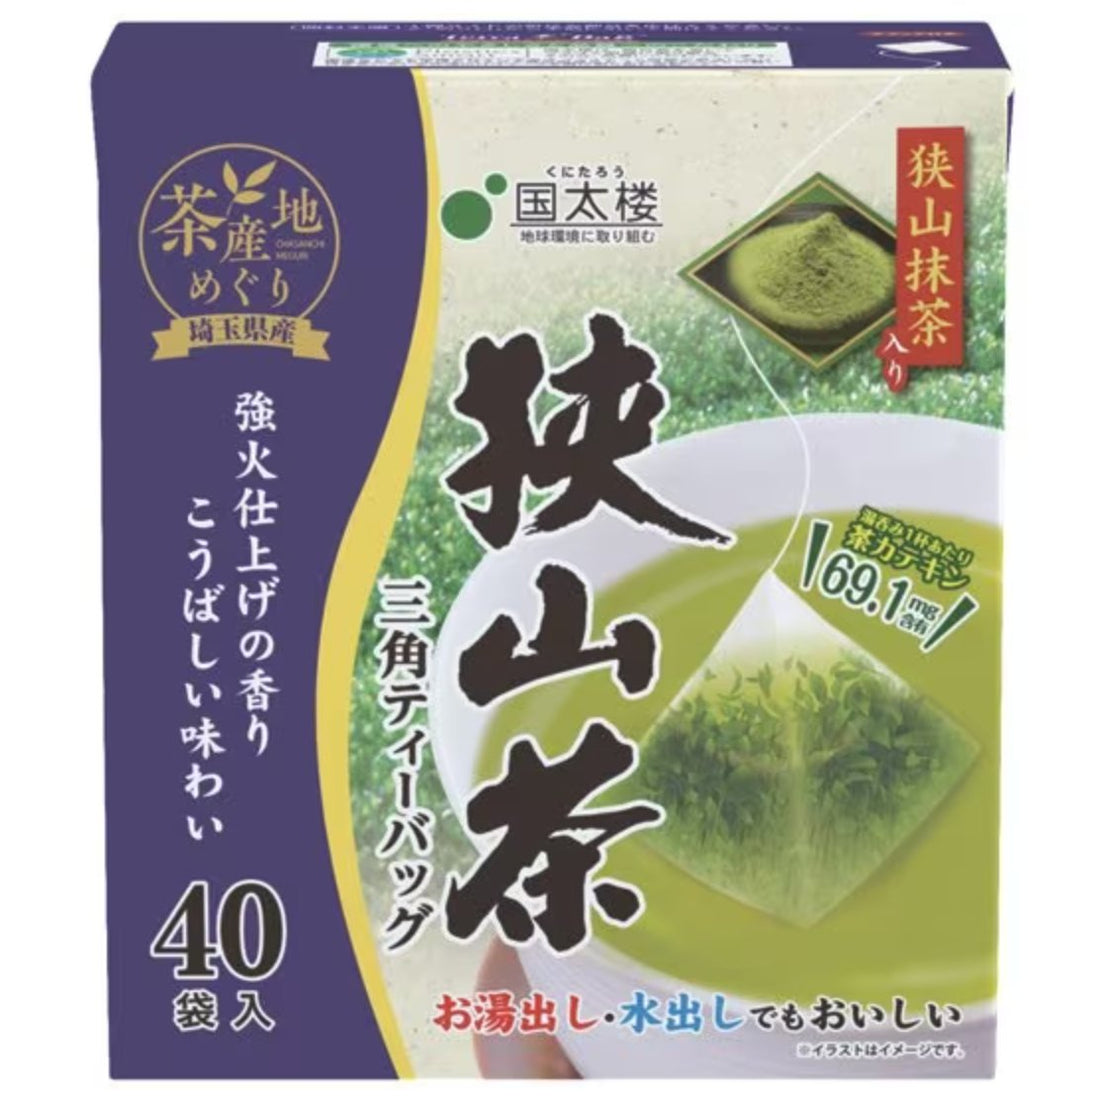 Kunitaro Sayama Tea Triangular Tea Bags 40 Bags 80g - NihonMura